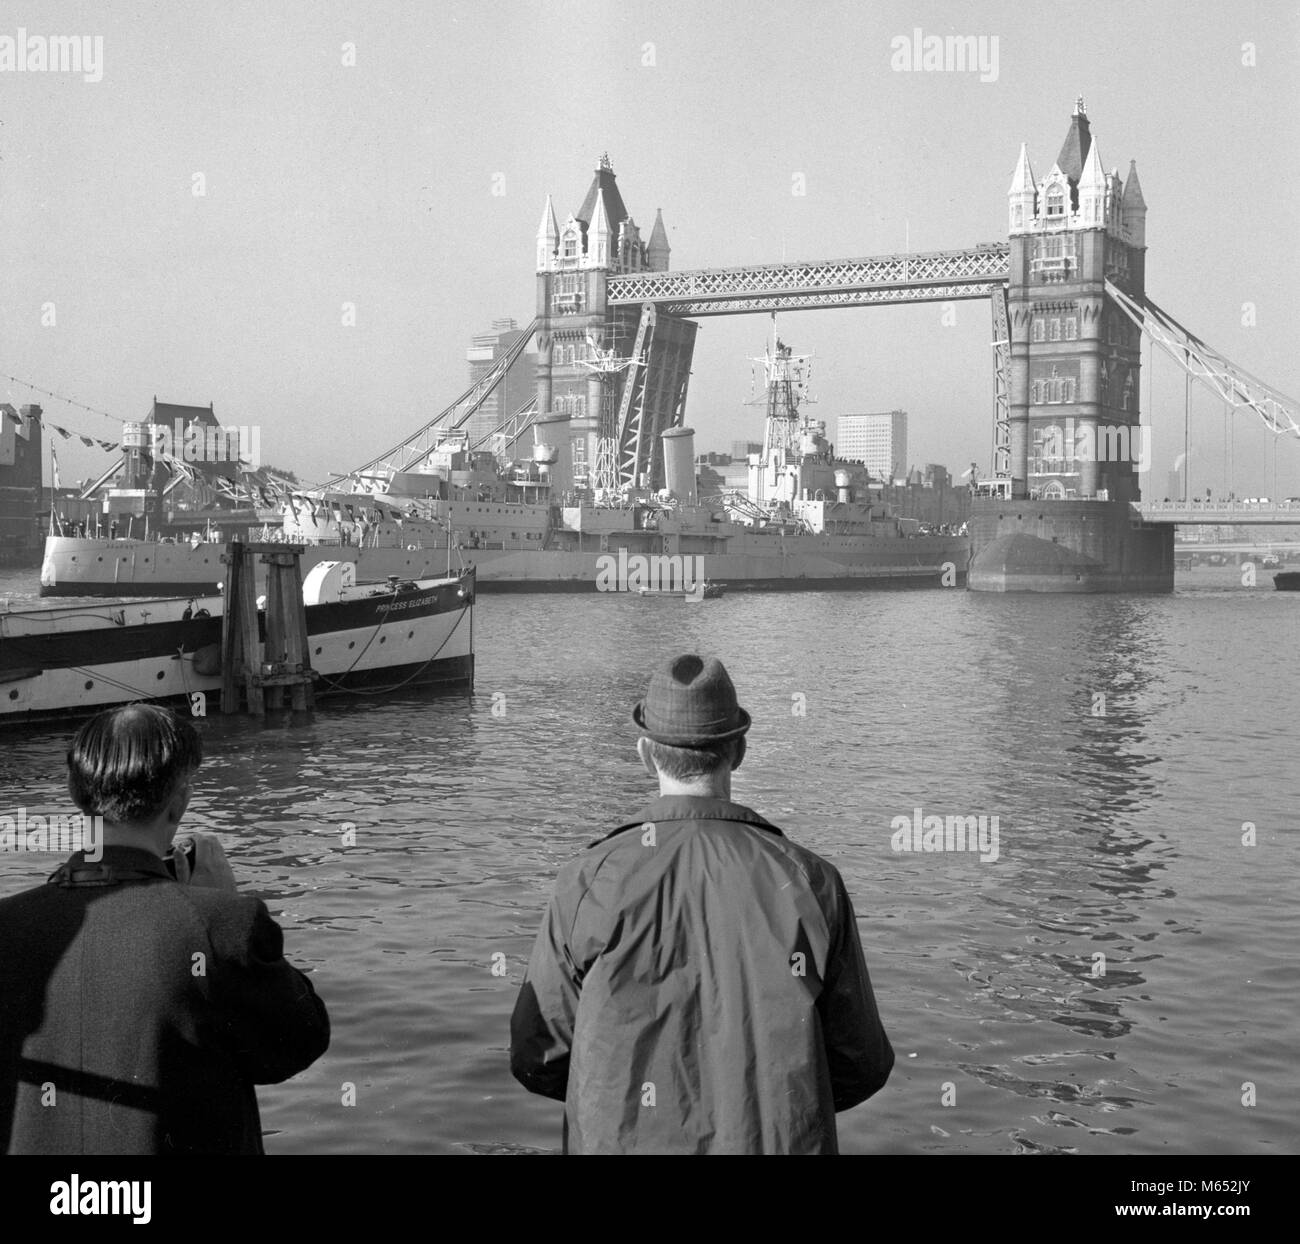 HMS Belfast, der Letzte der Royal Navy's Big-gun Kreuzer, durch die Tower Bridge auf dem Weg von der King George V Dock in Greenwich zu ihrer endgültigen Liegeplatz in der Nähe von Tower Bridge, wo Sie ein schwimmendes Museum geworden. Stockfoto